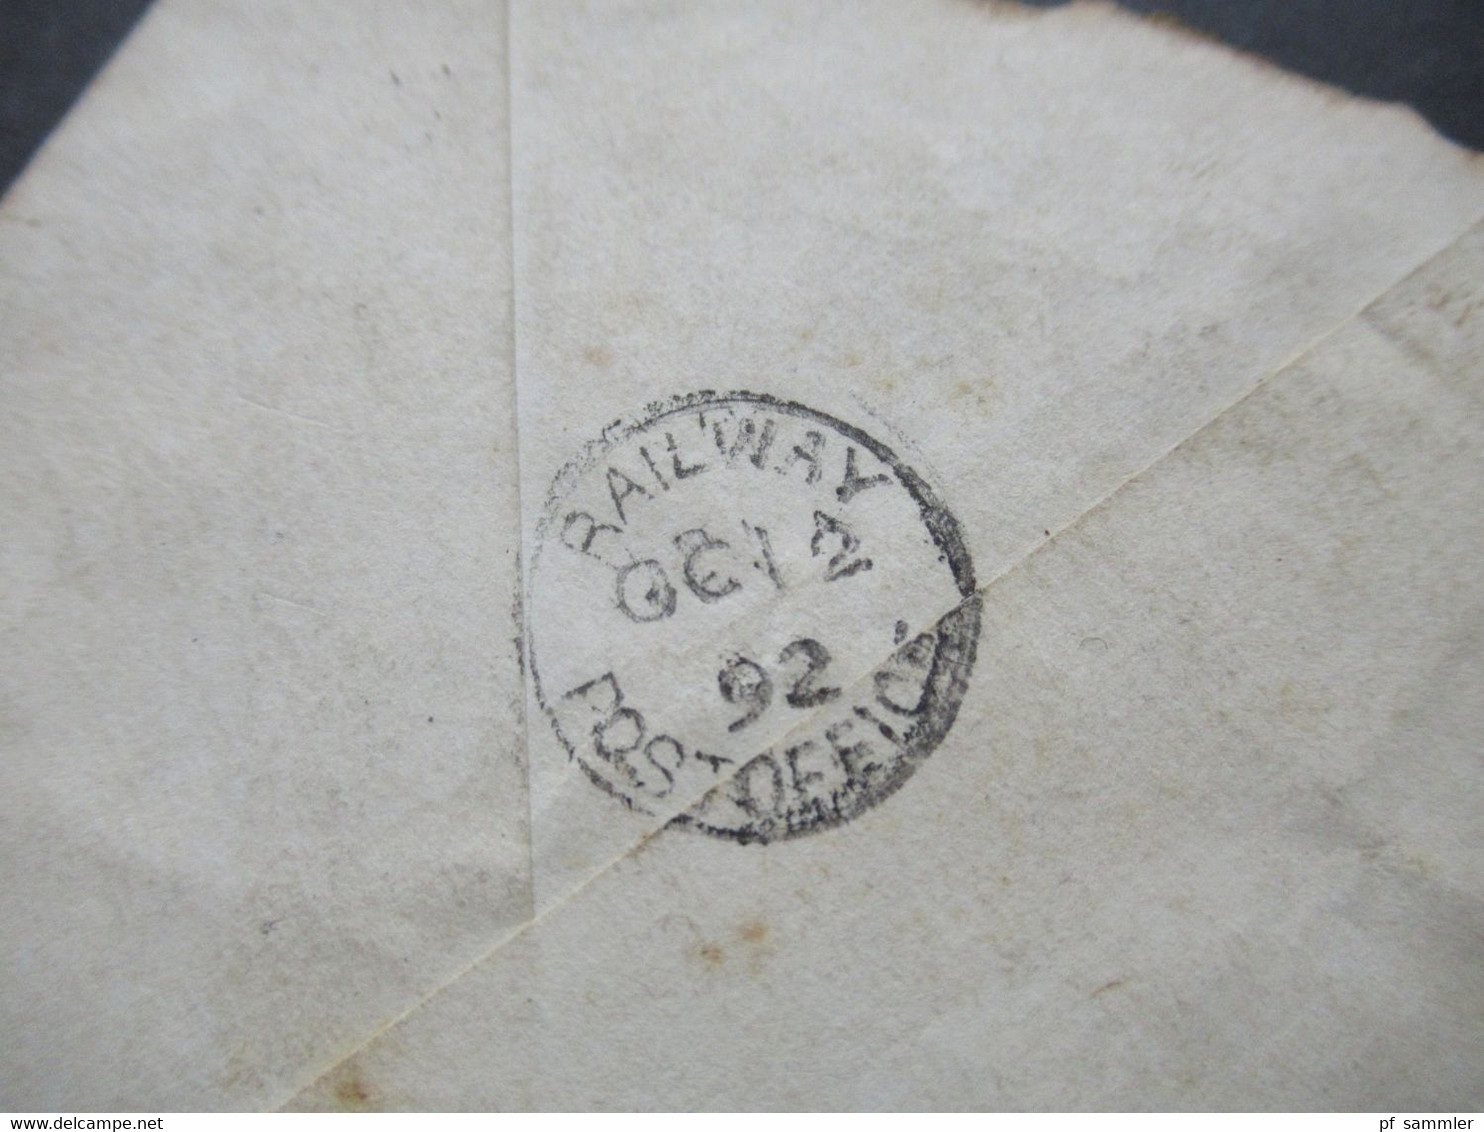 Ceylon 1892 GB Kolonie Ganzsache Stempel Jaffna Paid Und Railway Post Office Und Absenderstempel Jaffna - Ceylan (...-1947)